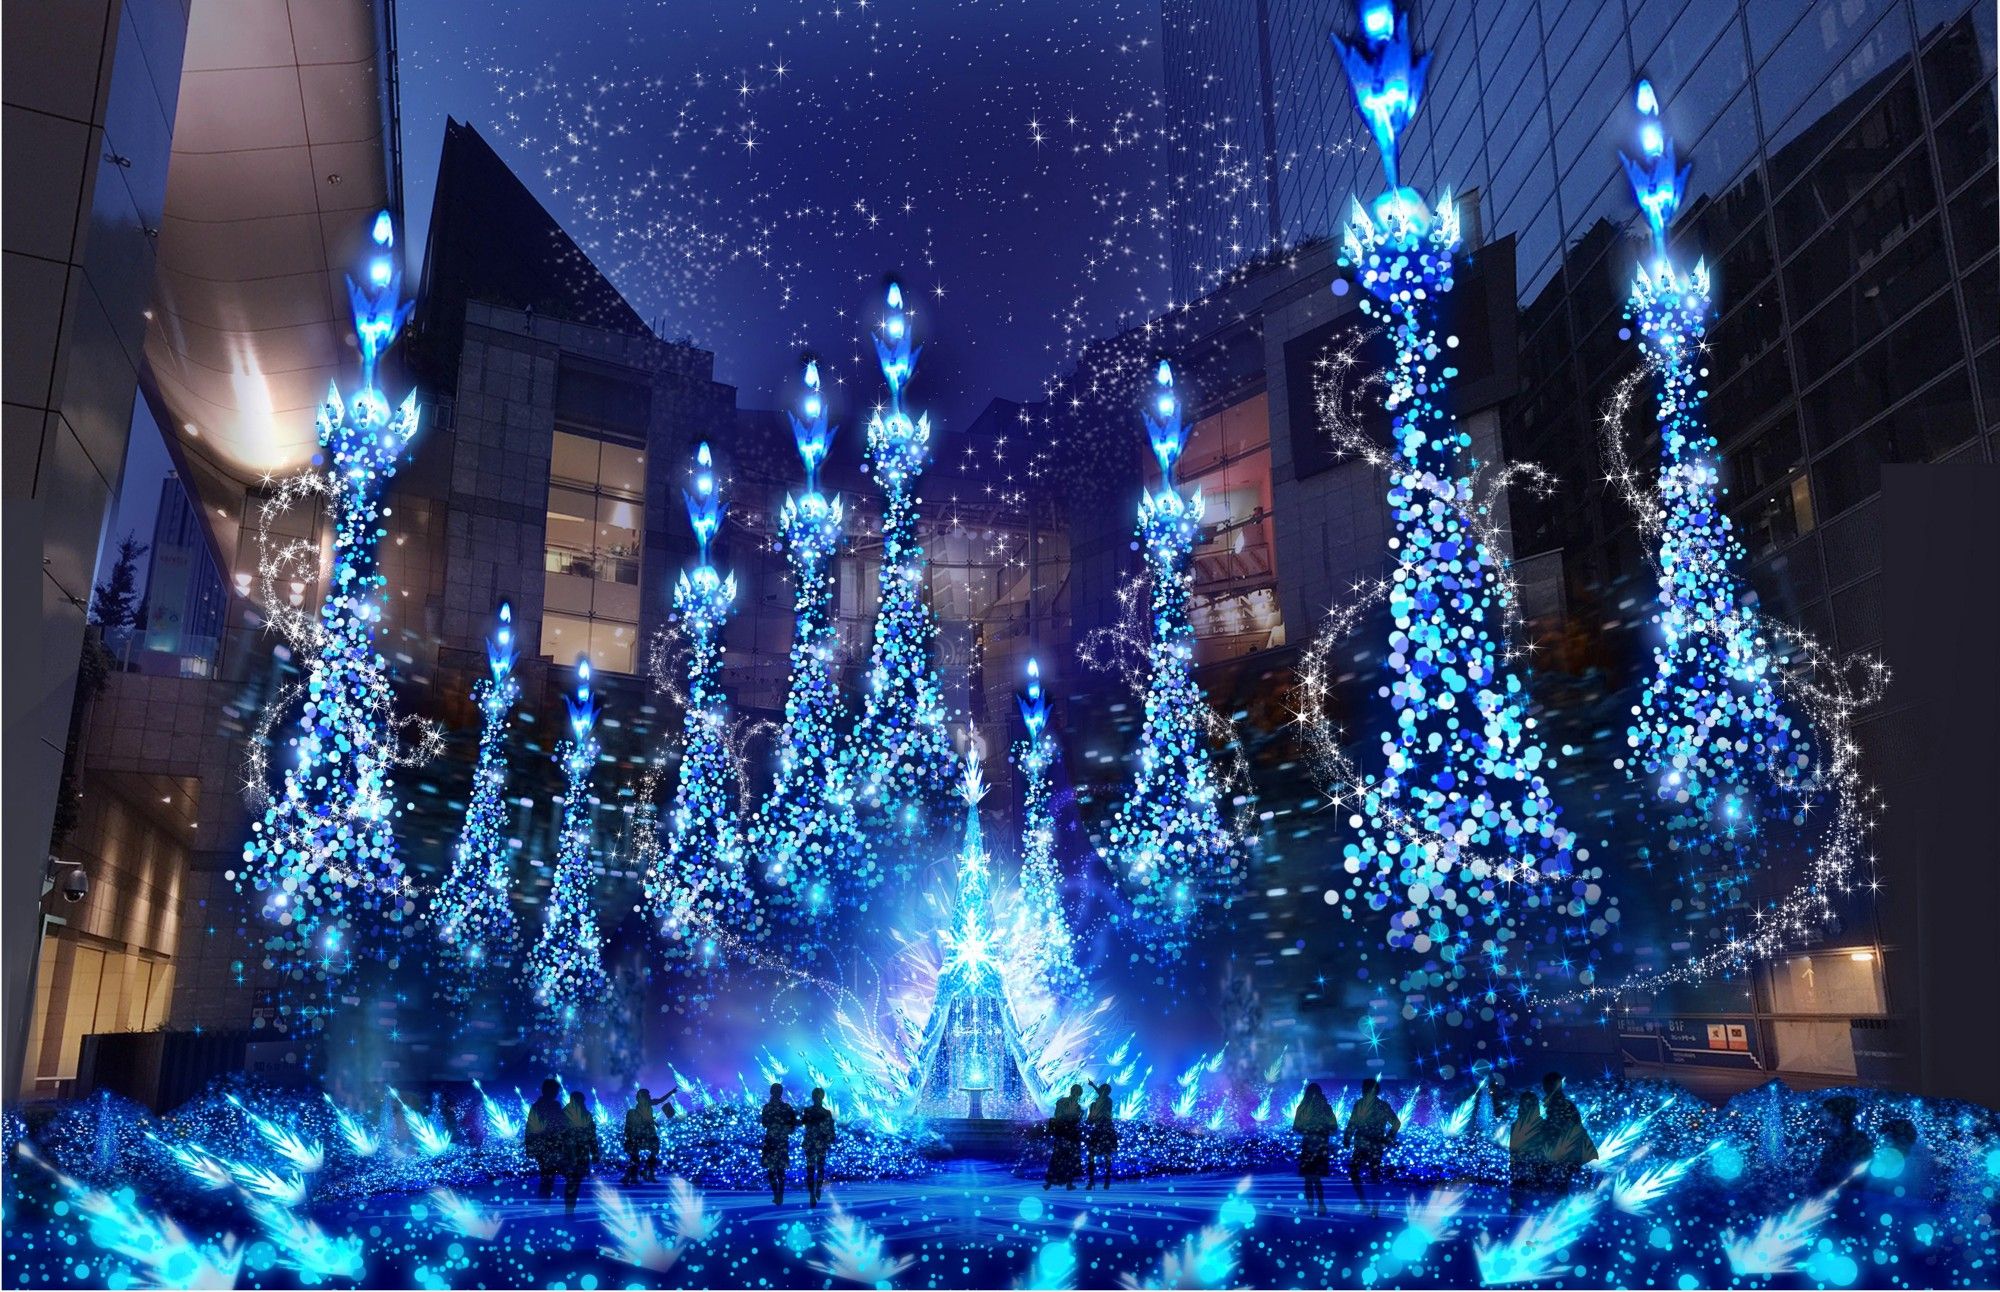 東京燈飾 迪士尼公主系列點燈 Caretta汐留2018年11月開始 東京自由行